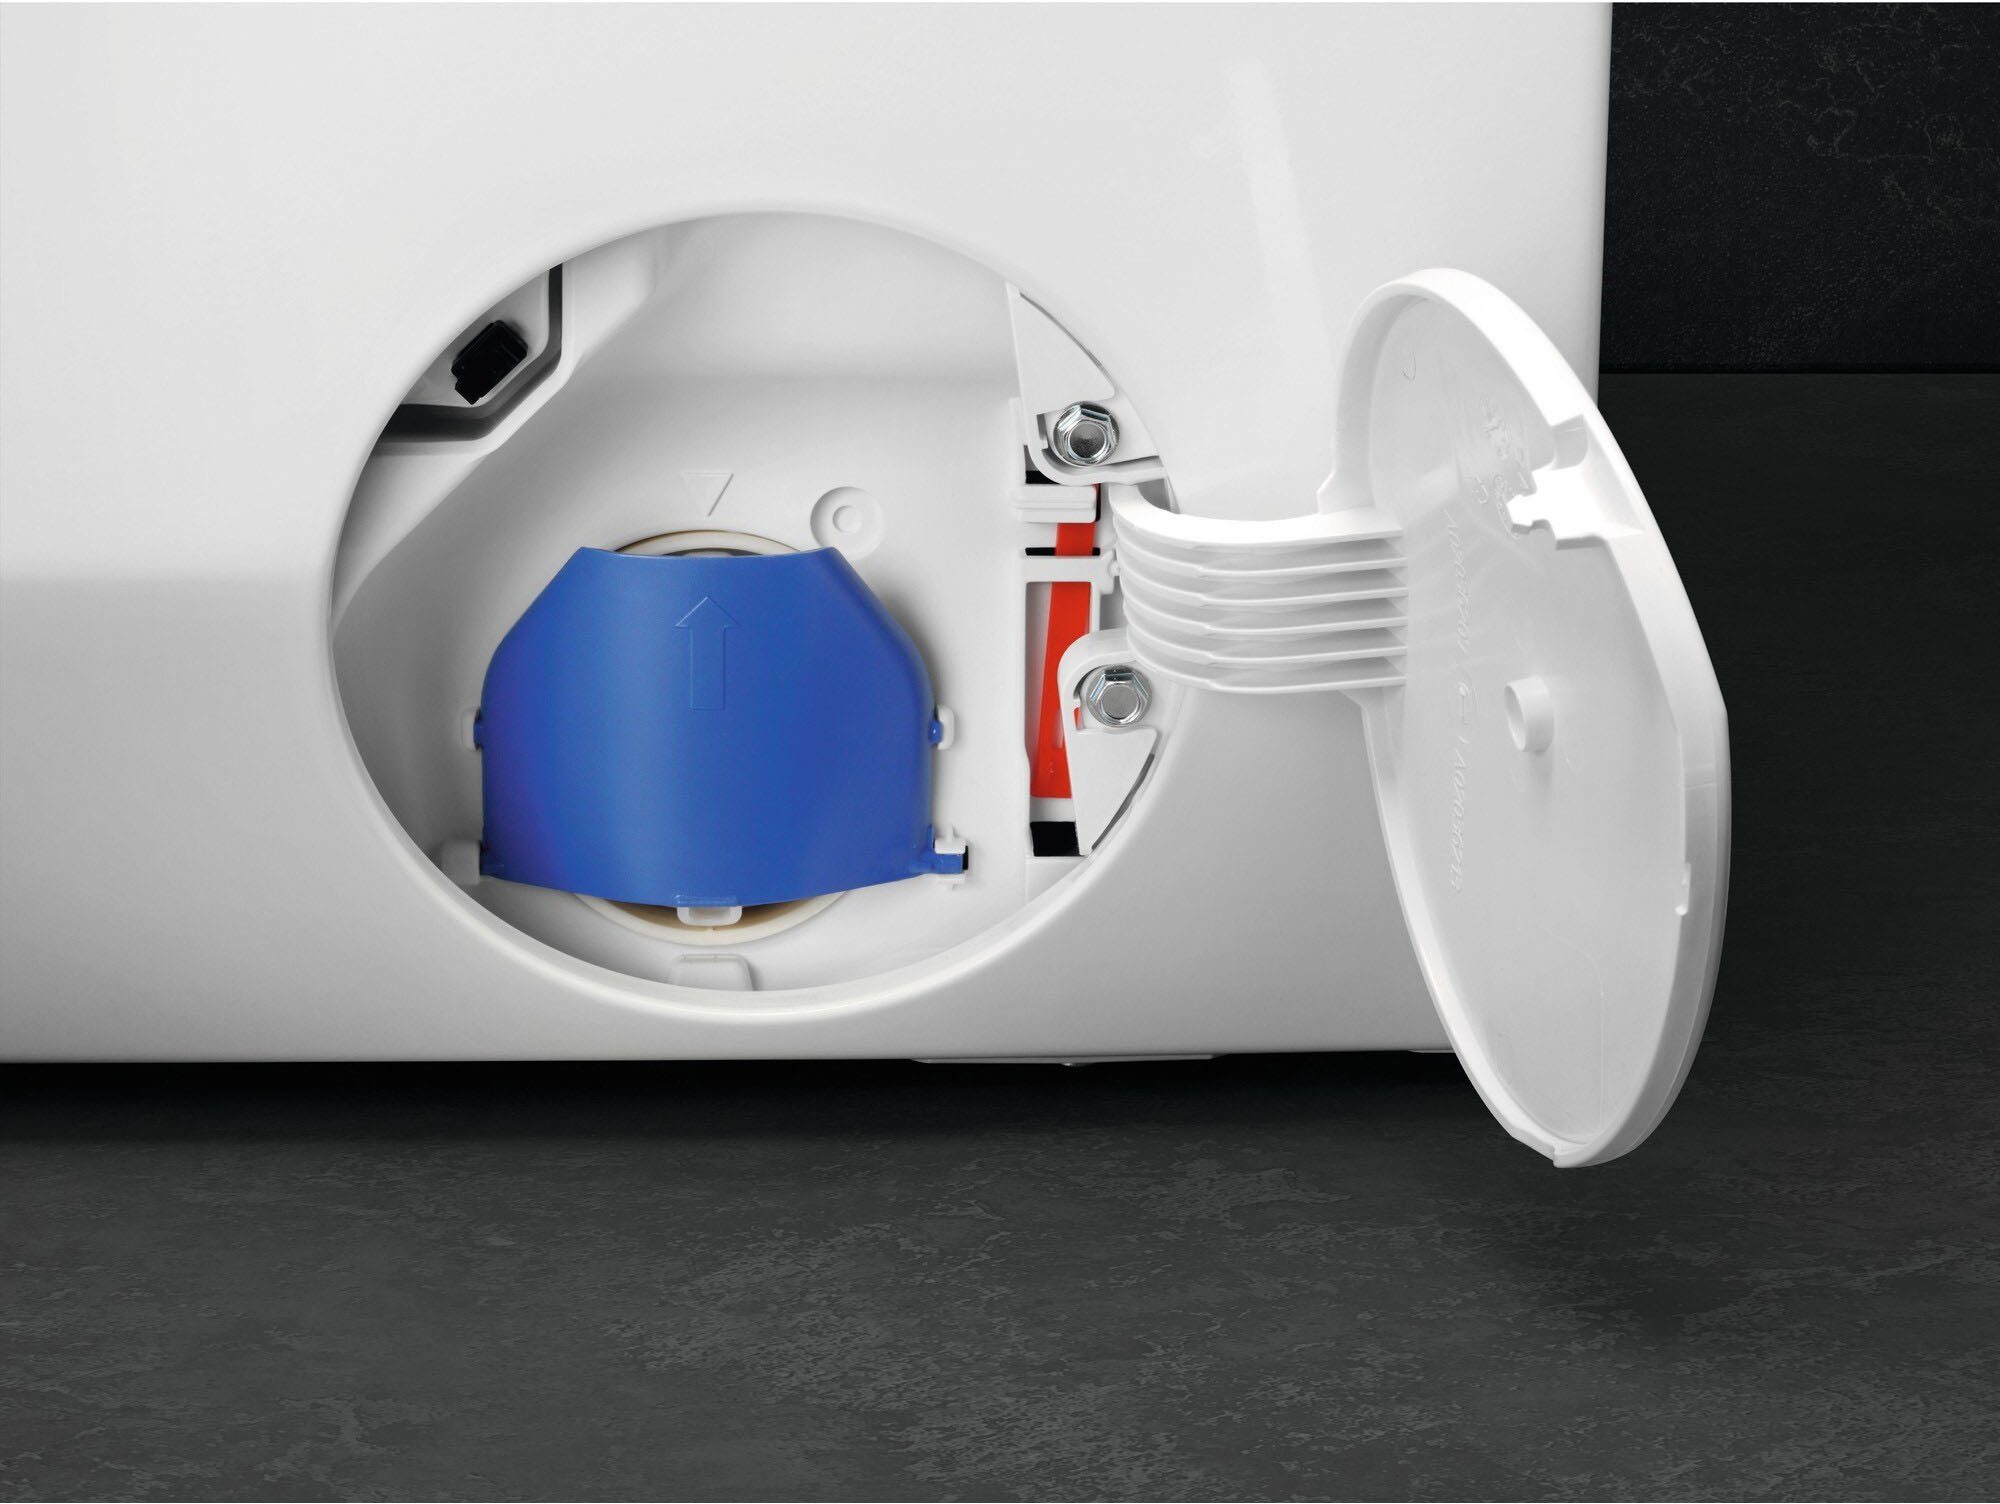 & kg, AEG Waschmaschine Wasserverbrauch U/min, ProSteam Dampf-Programm 1400 LR7E75400, - für 96 Wifi 10 % weniger